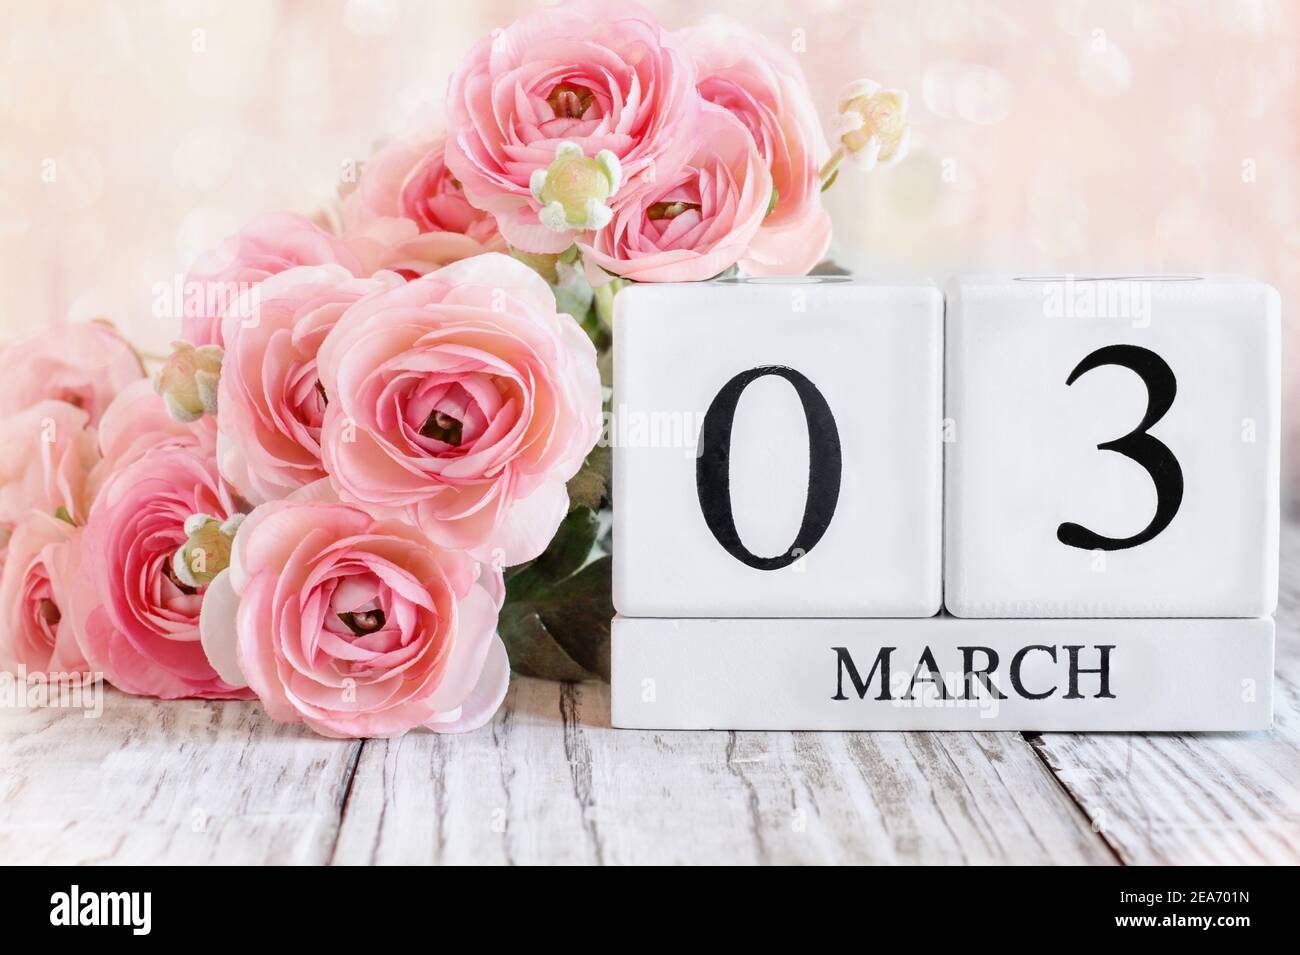 Weiße Holz-Kalenderblöcke mit dem Datum März 3rd und rosa Ranunculus Blumen über einem Holztisch. Selektiver Fokus mit unscharfem Hintergrund. Stockfoto